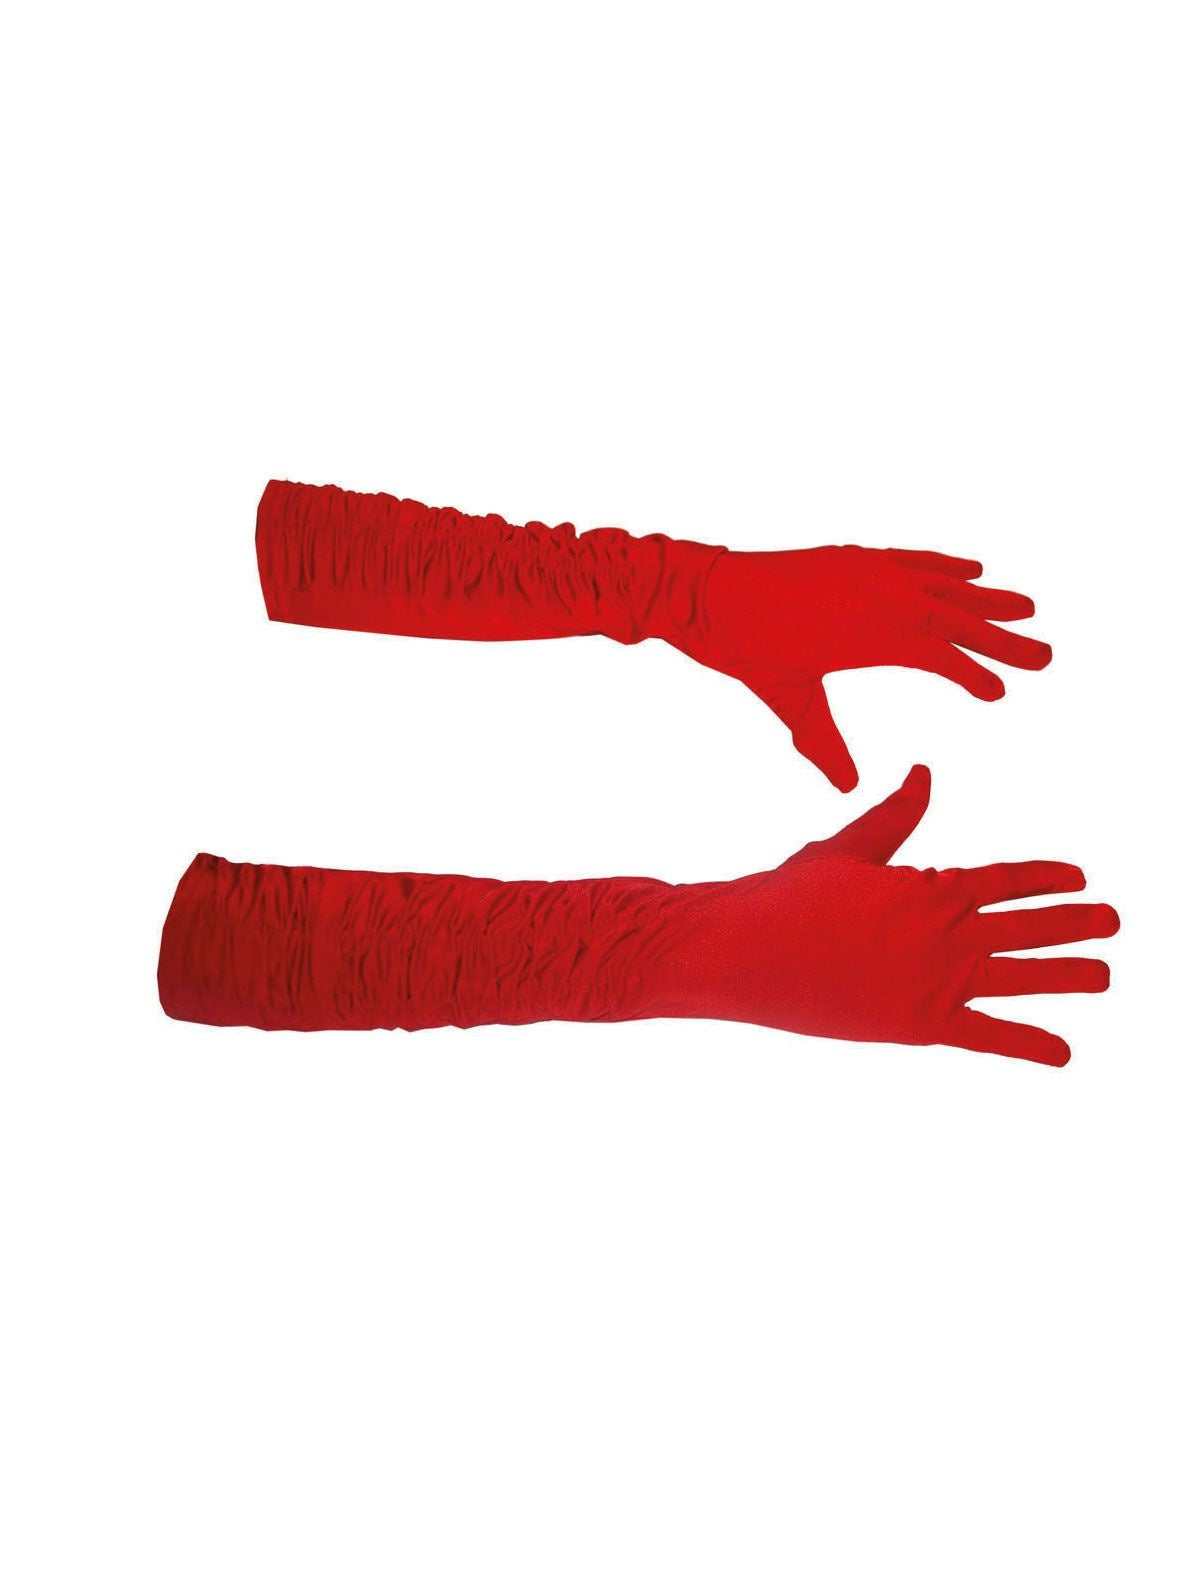 Mooie rode gerimpelde handschoenen 46cm